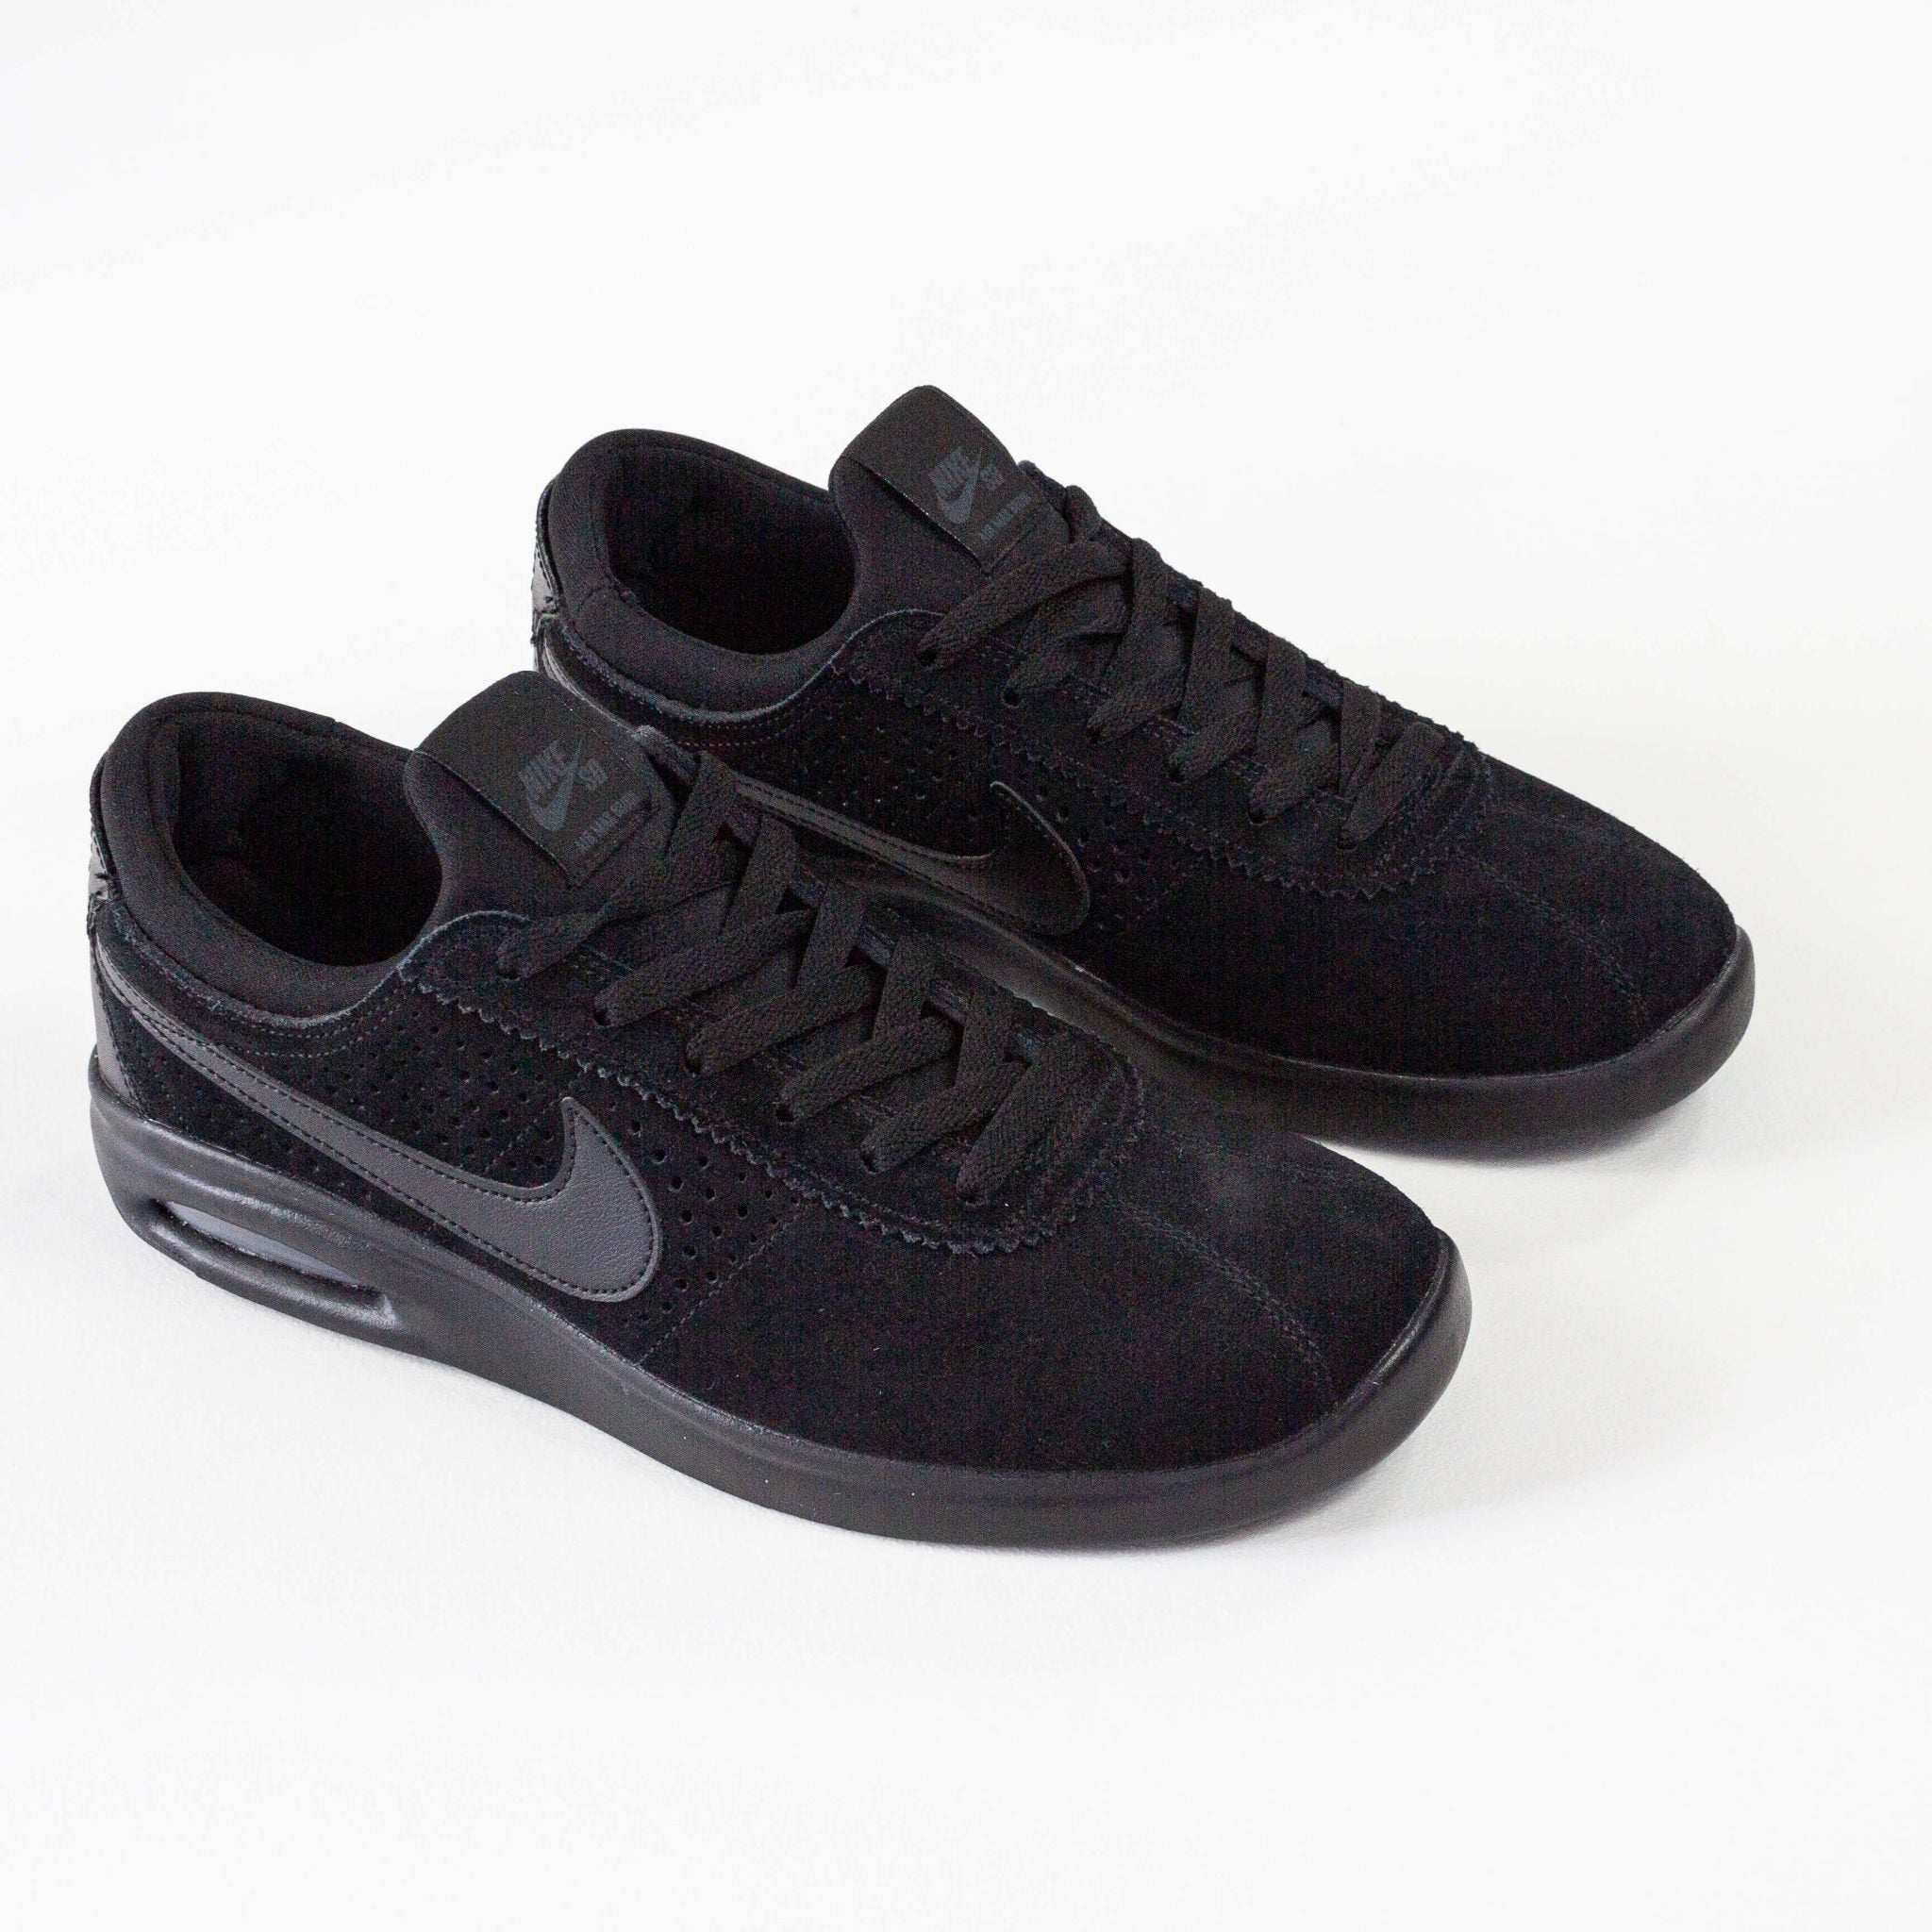 Infidelidad Contribución Expectativa Nike SB Air Max Bruin Vapor Shoes - Black / Anthracite (003) – Remix Casuals